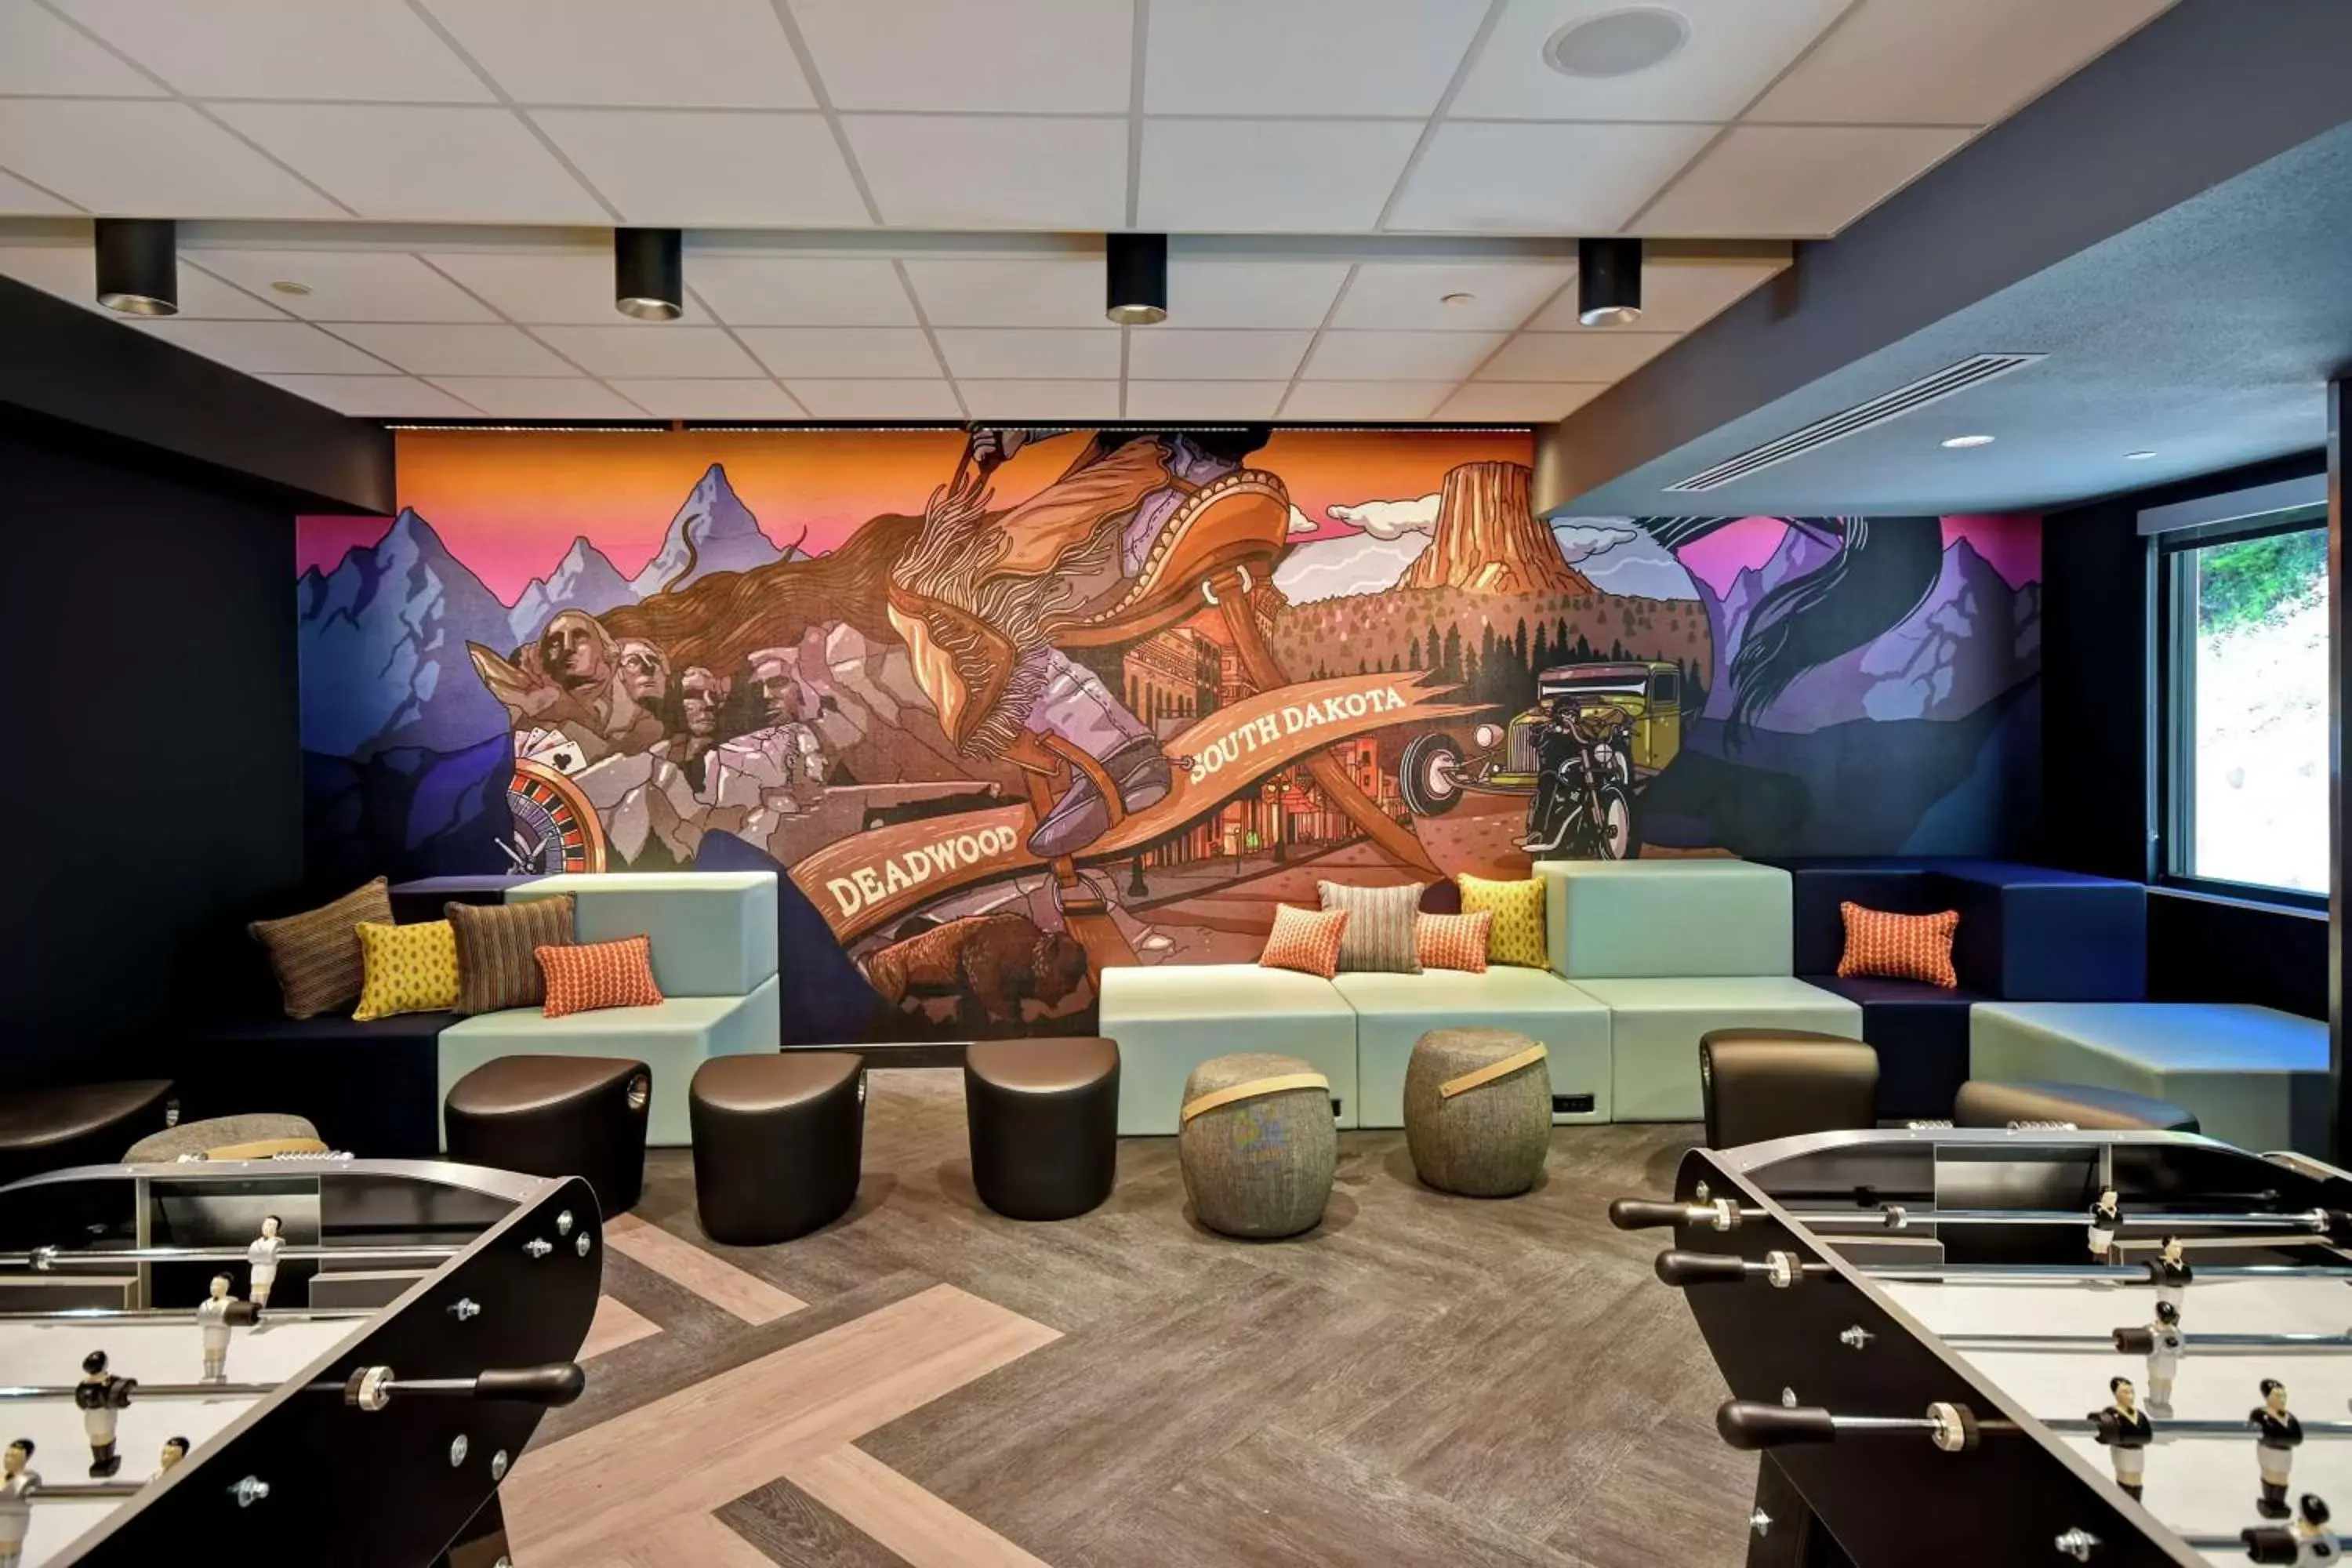 Lobby or reception in Tru By Hilton Deadwood